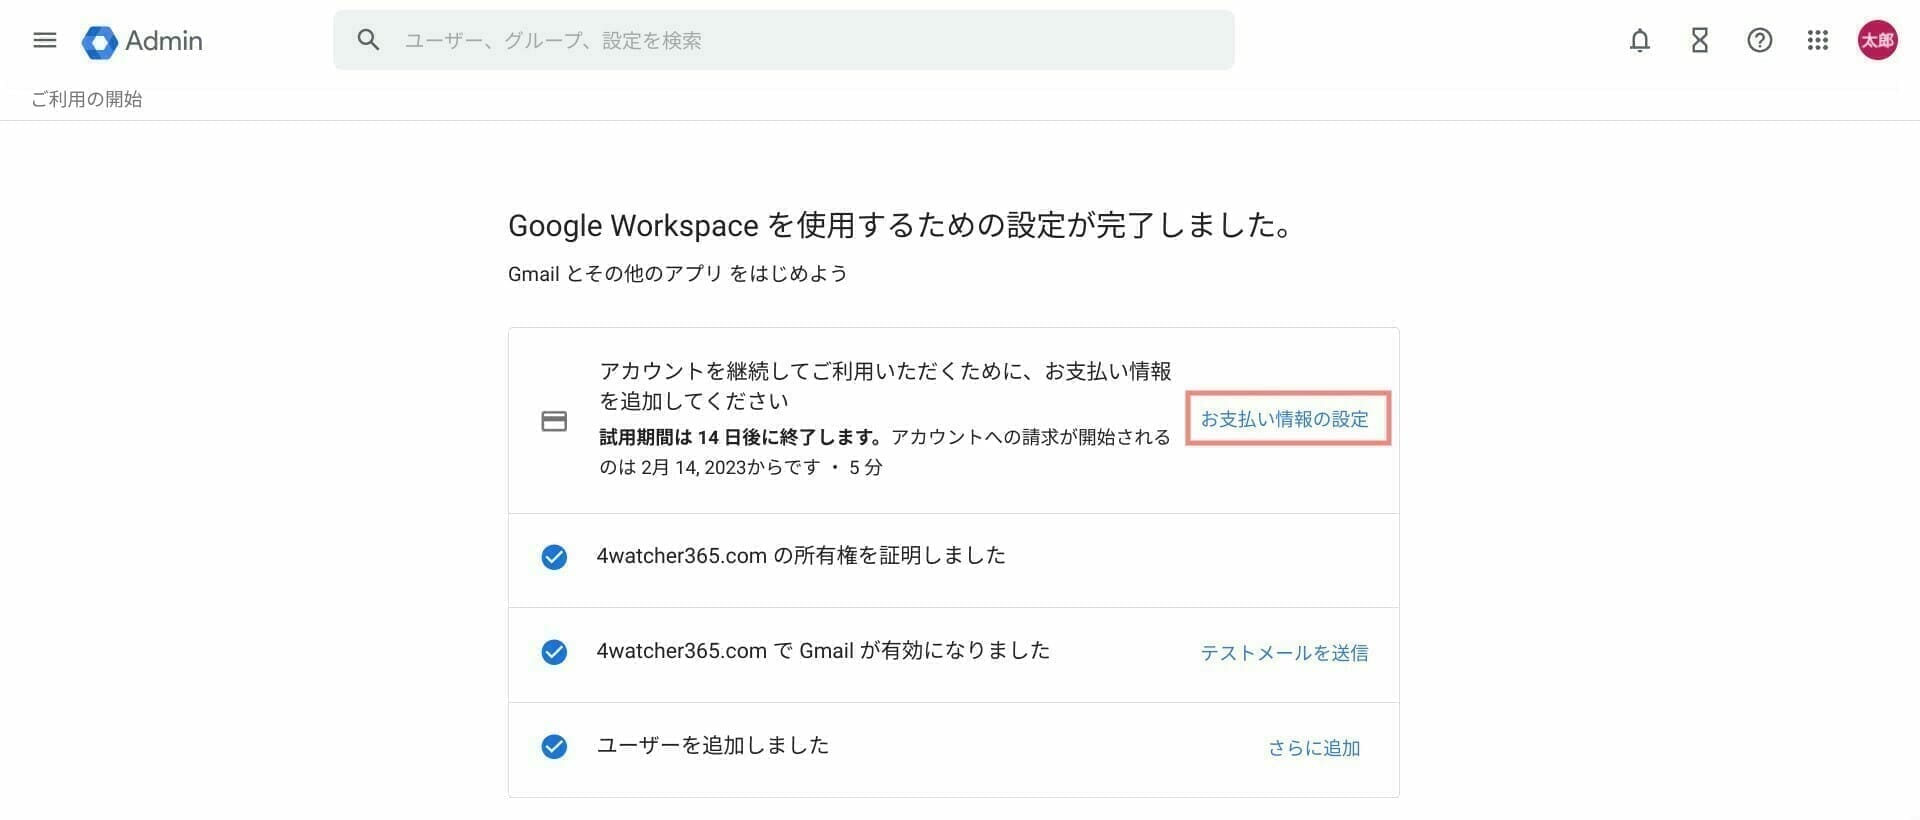 Google Workspace：初期設定項目を確認する